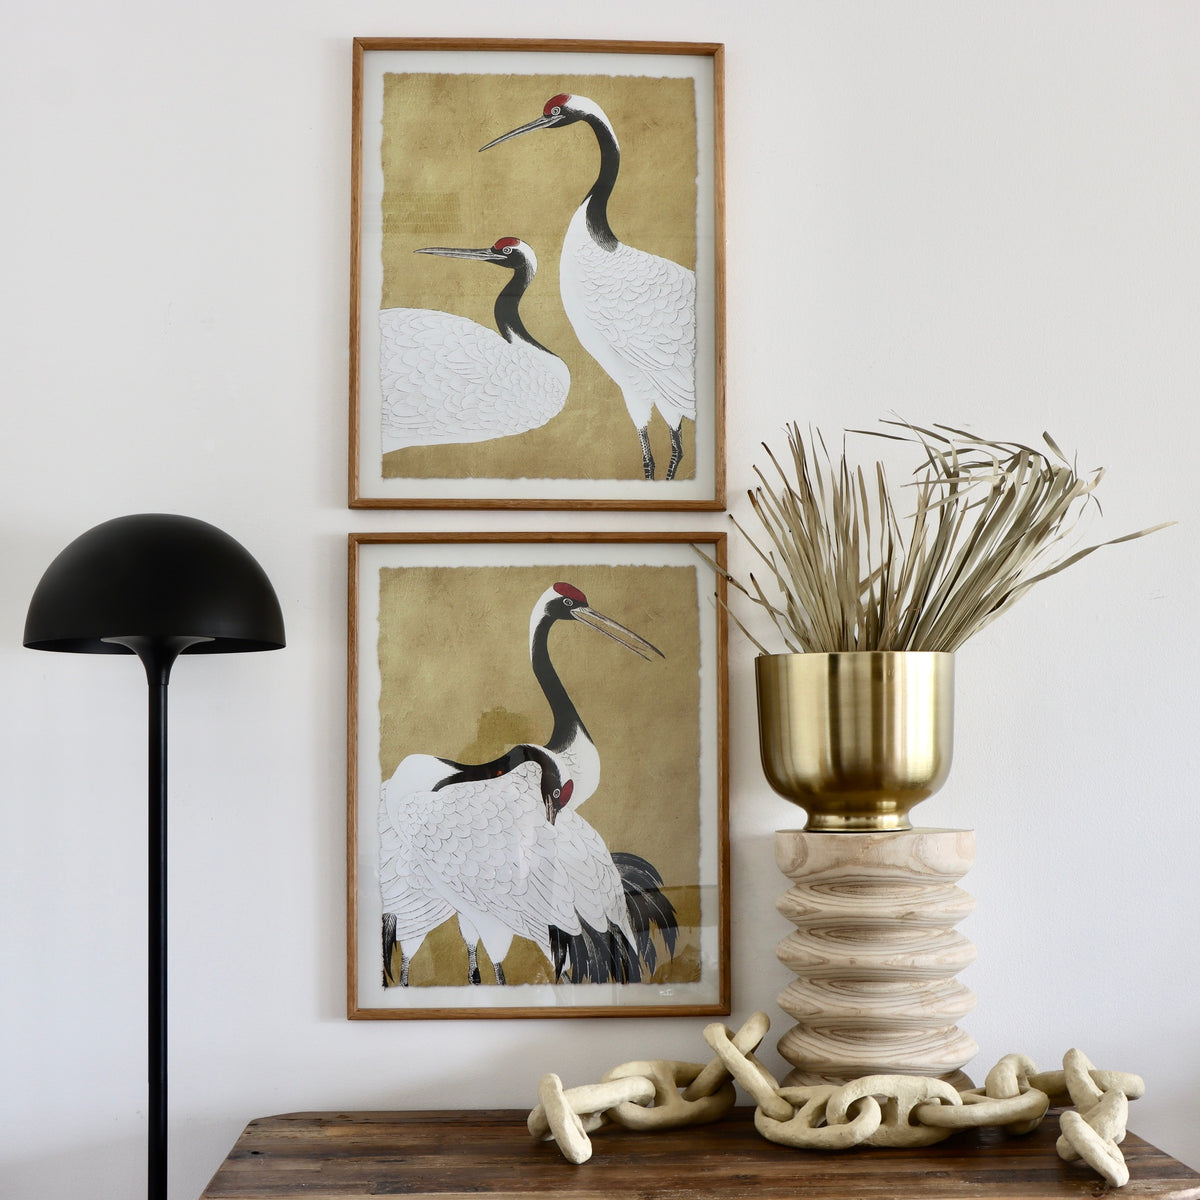 Red-Crowned Crane Framed Prints Under Glass - Holistic Habitat 